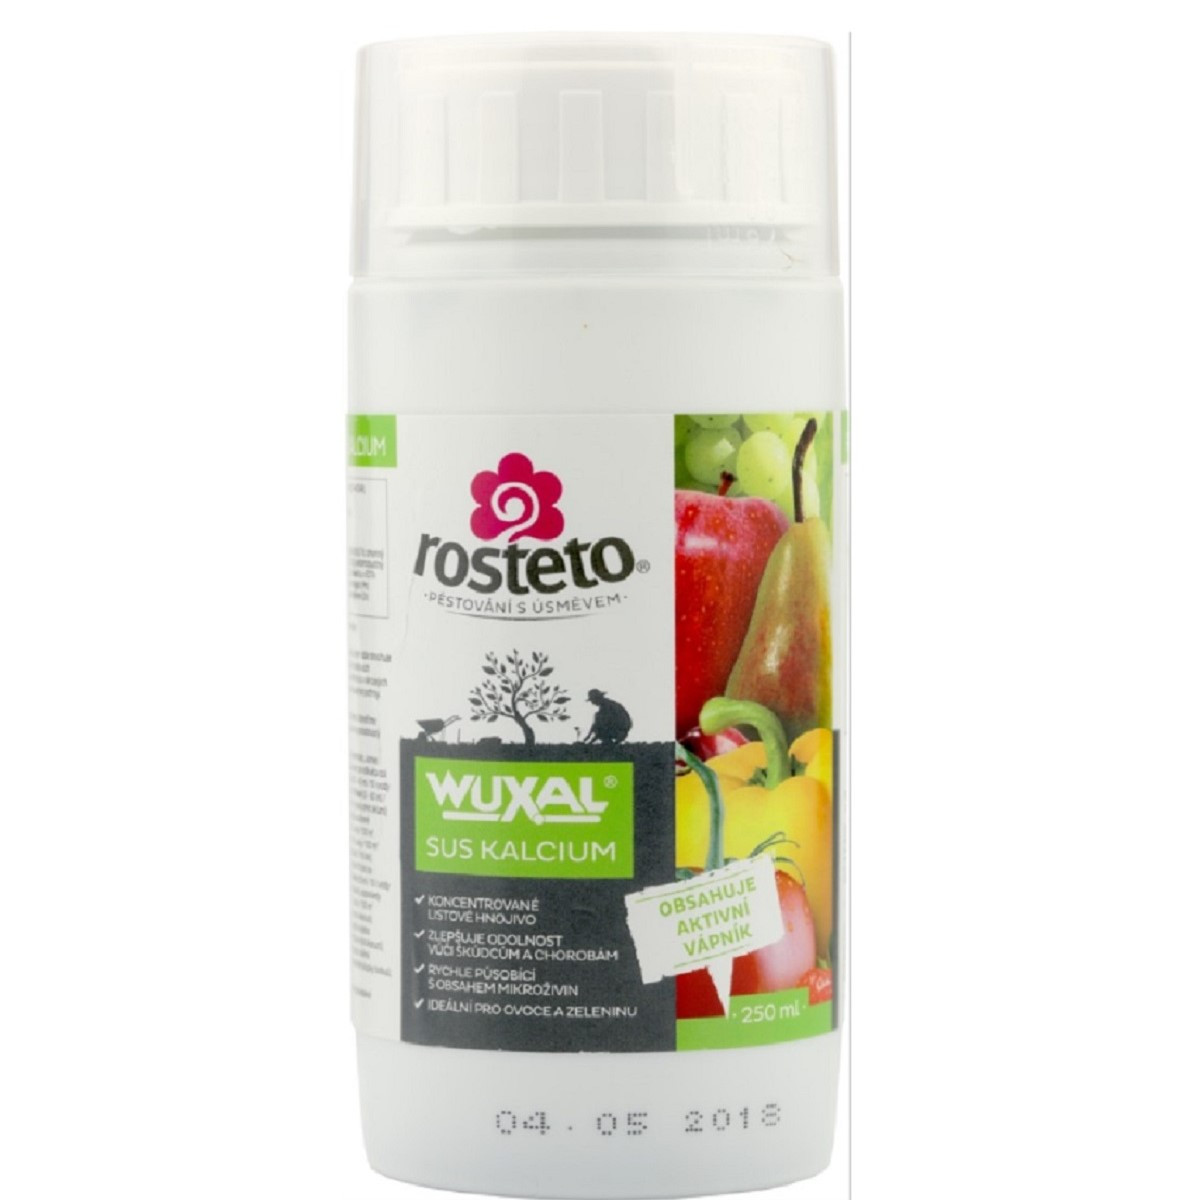 Wuxal SUS kalcium - tekuté hnojivo - Rosteto - 250 ml